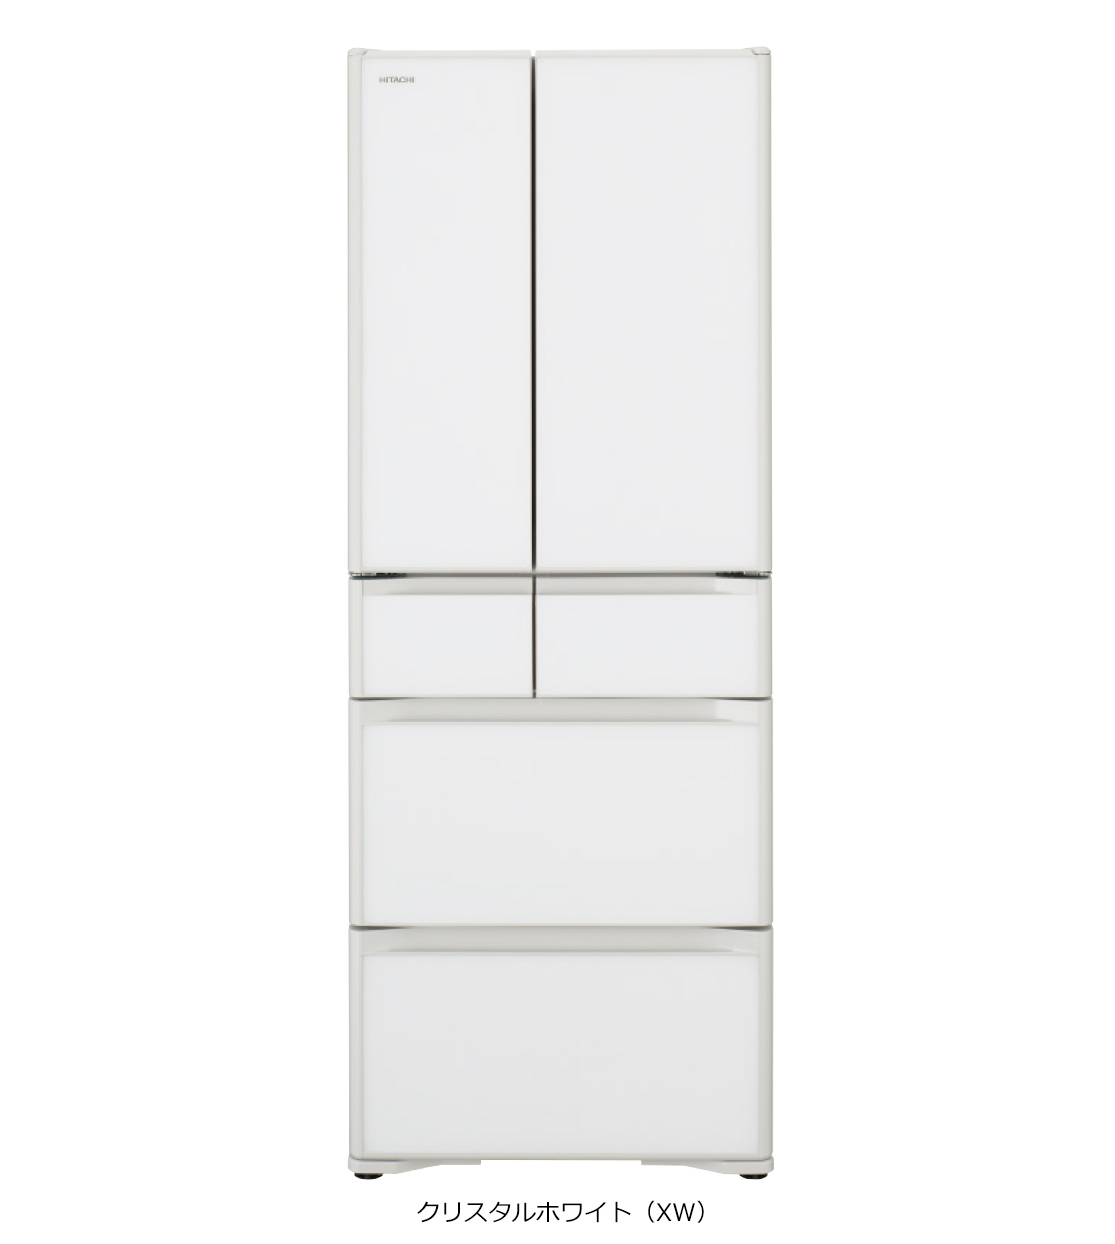 仕様：GSシリーズ ： 冷蔵庫 ： 日立の家電品